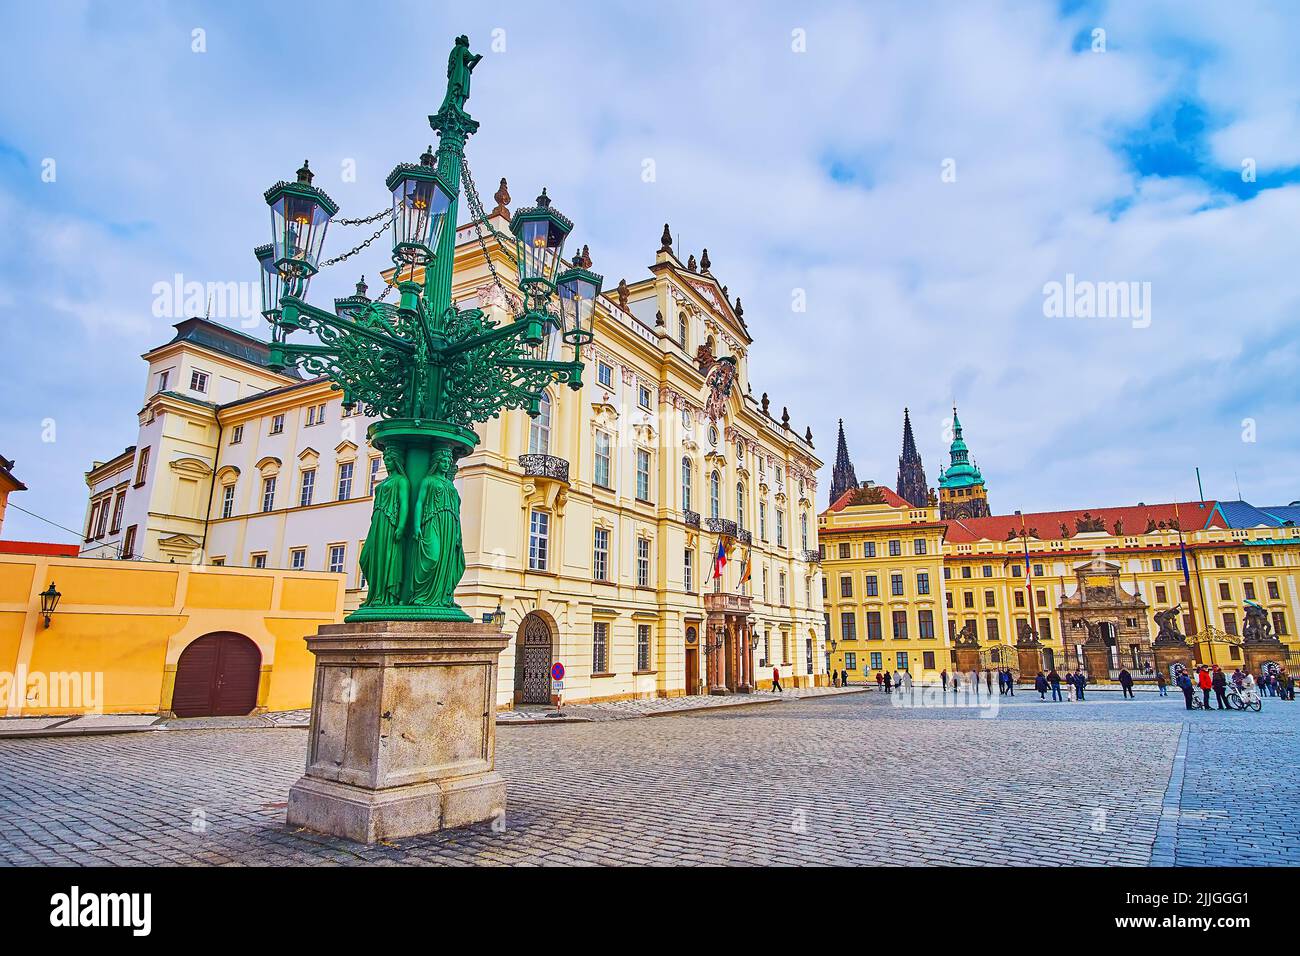 La scenografica Candelabra vintage scolpita, si trova di fronte al Palazzo dell'Arcivescovo in Piazza del Castello, Praga, Repubblica Ceca Foto Stock